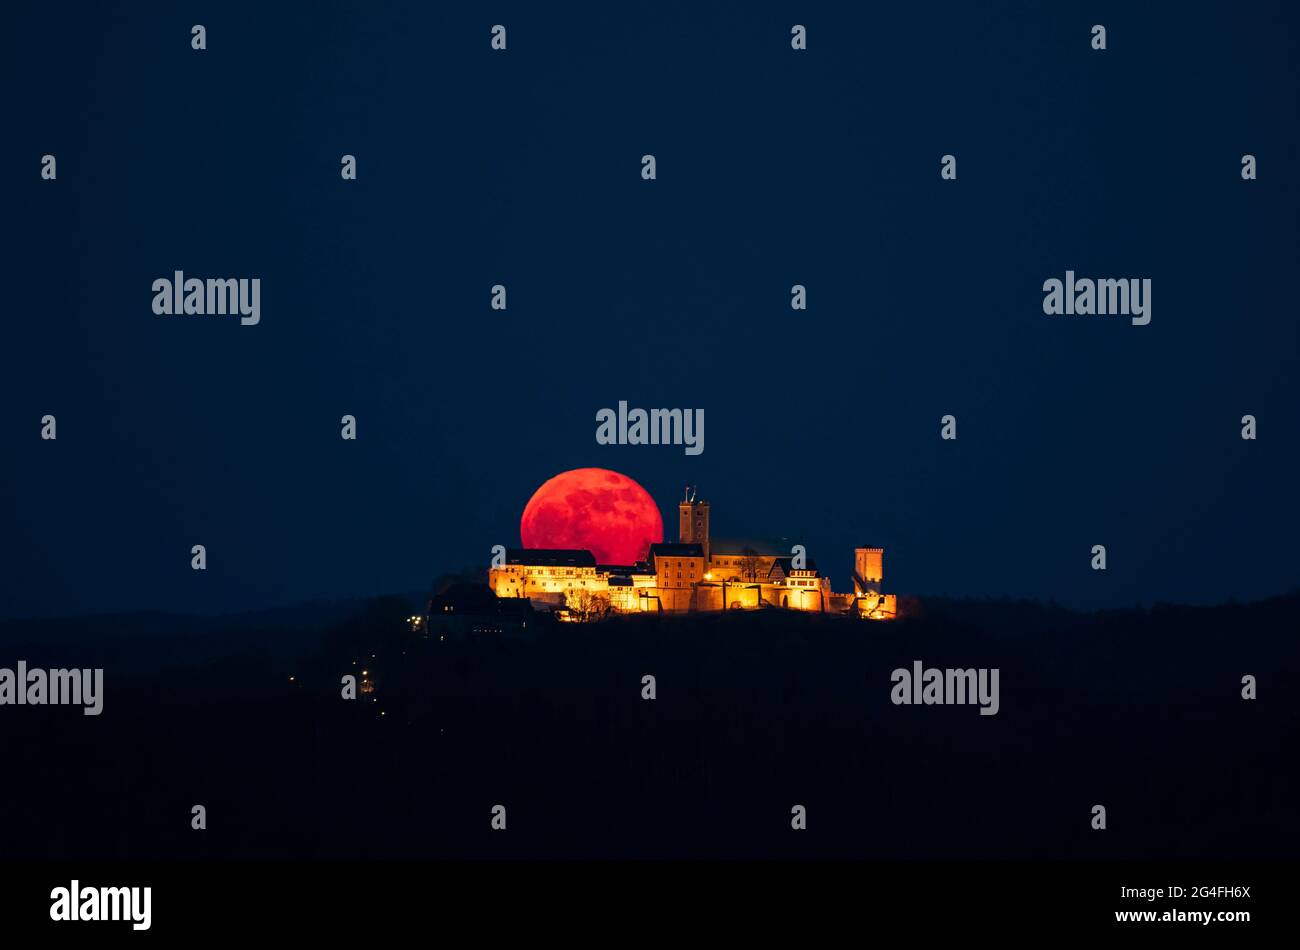 Wartburg bei Nacht mit Mondaufgang, Vollmond, Supermond aus dem Jahr 27.04.2021, UNESCO-Weltkulturerbe, Eisenach, Thüringen, Deutschland Stockfoto